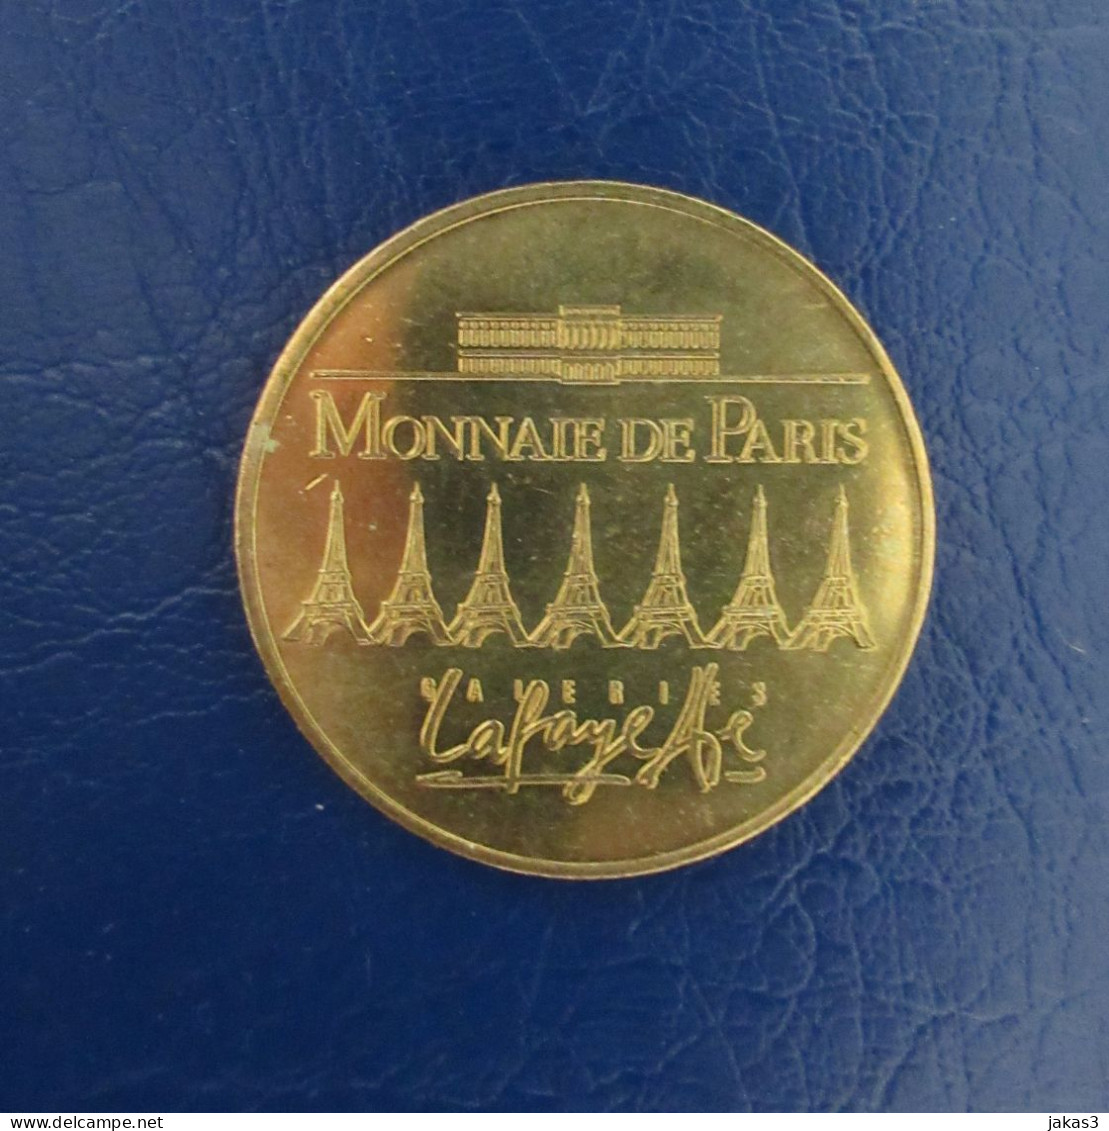 MONNAIE DE PARIS -  MÉDAILLE SOUVENIR - GALERIES LAFAYETTE - PARIS - NON DATÉ - ANNÉE  2006 - 2006